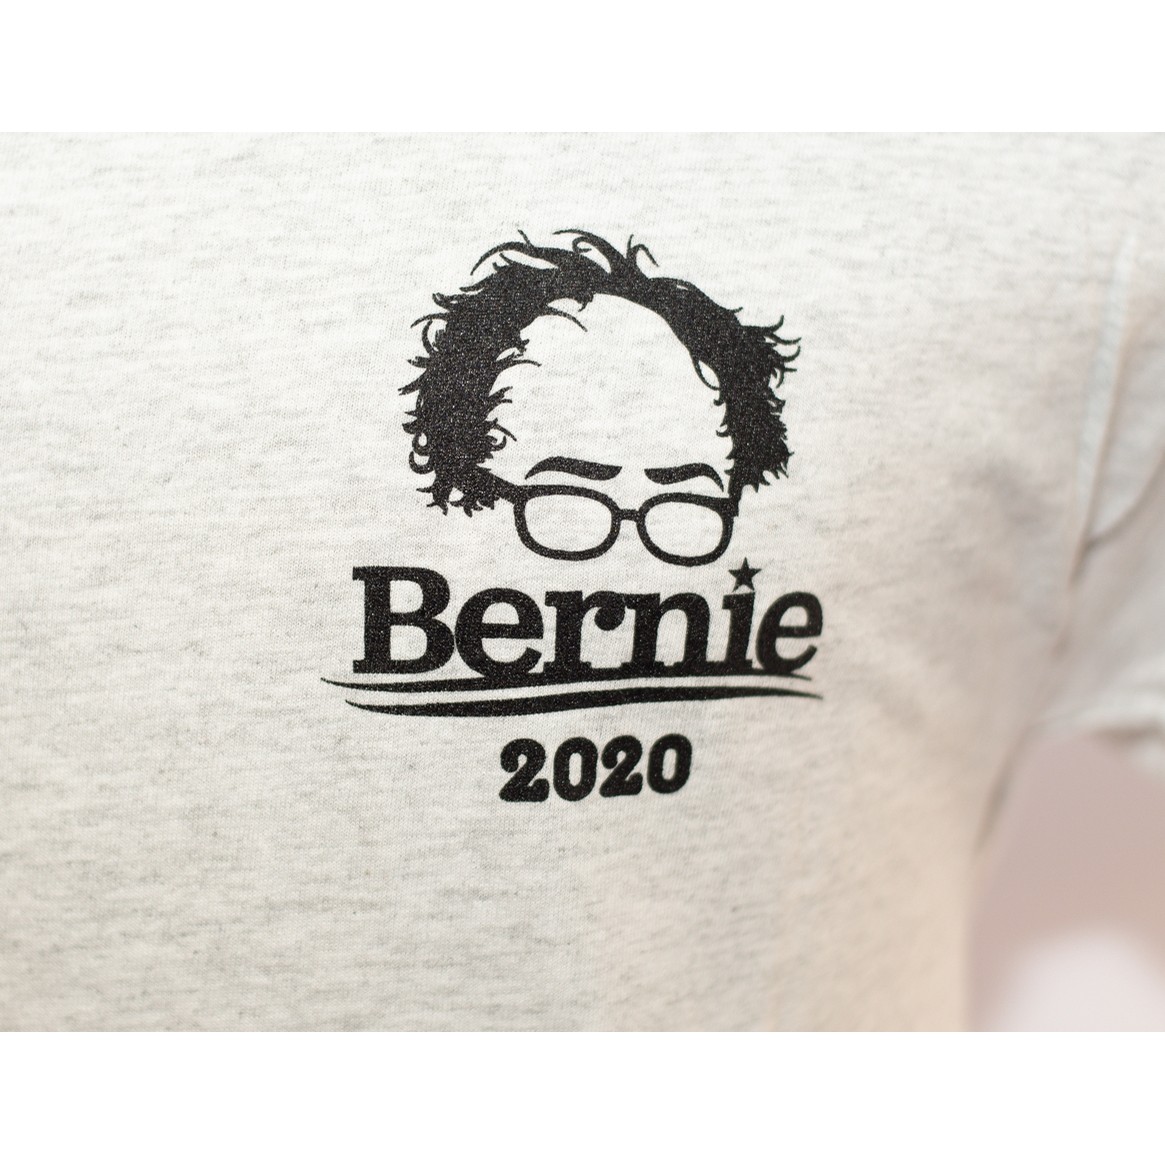 Bernie 2020 Tee (ash/Black)